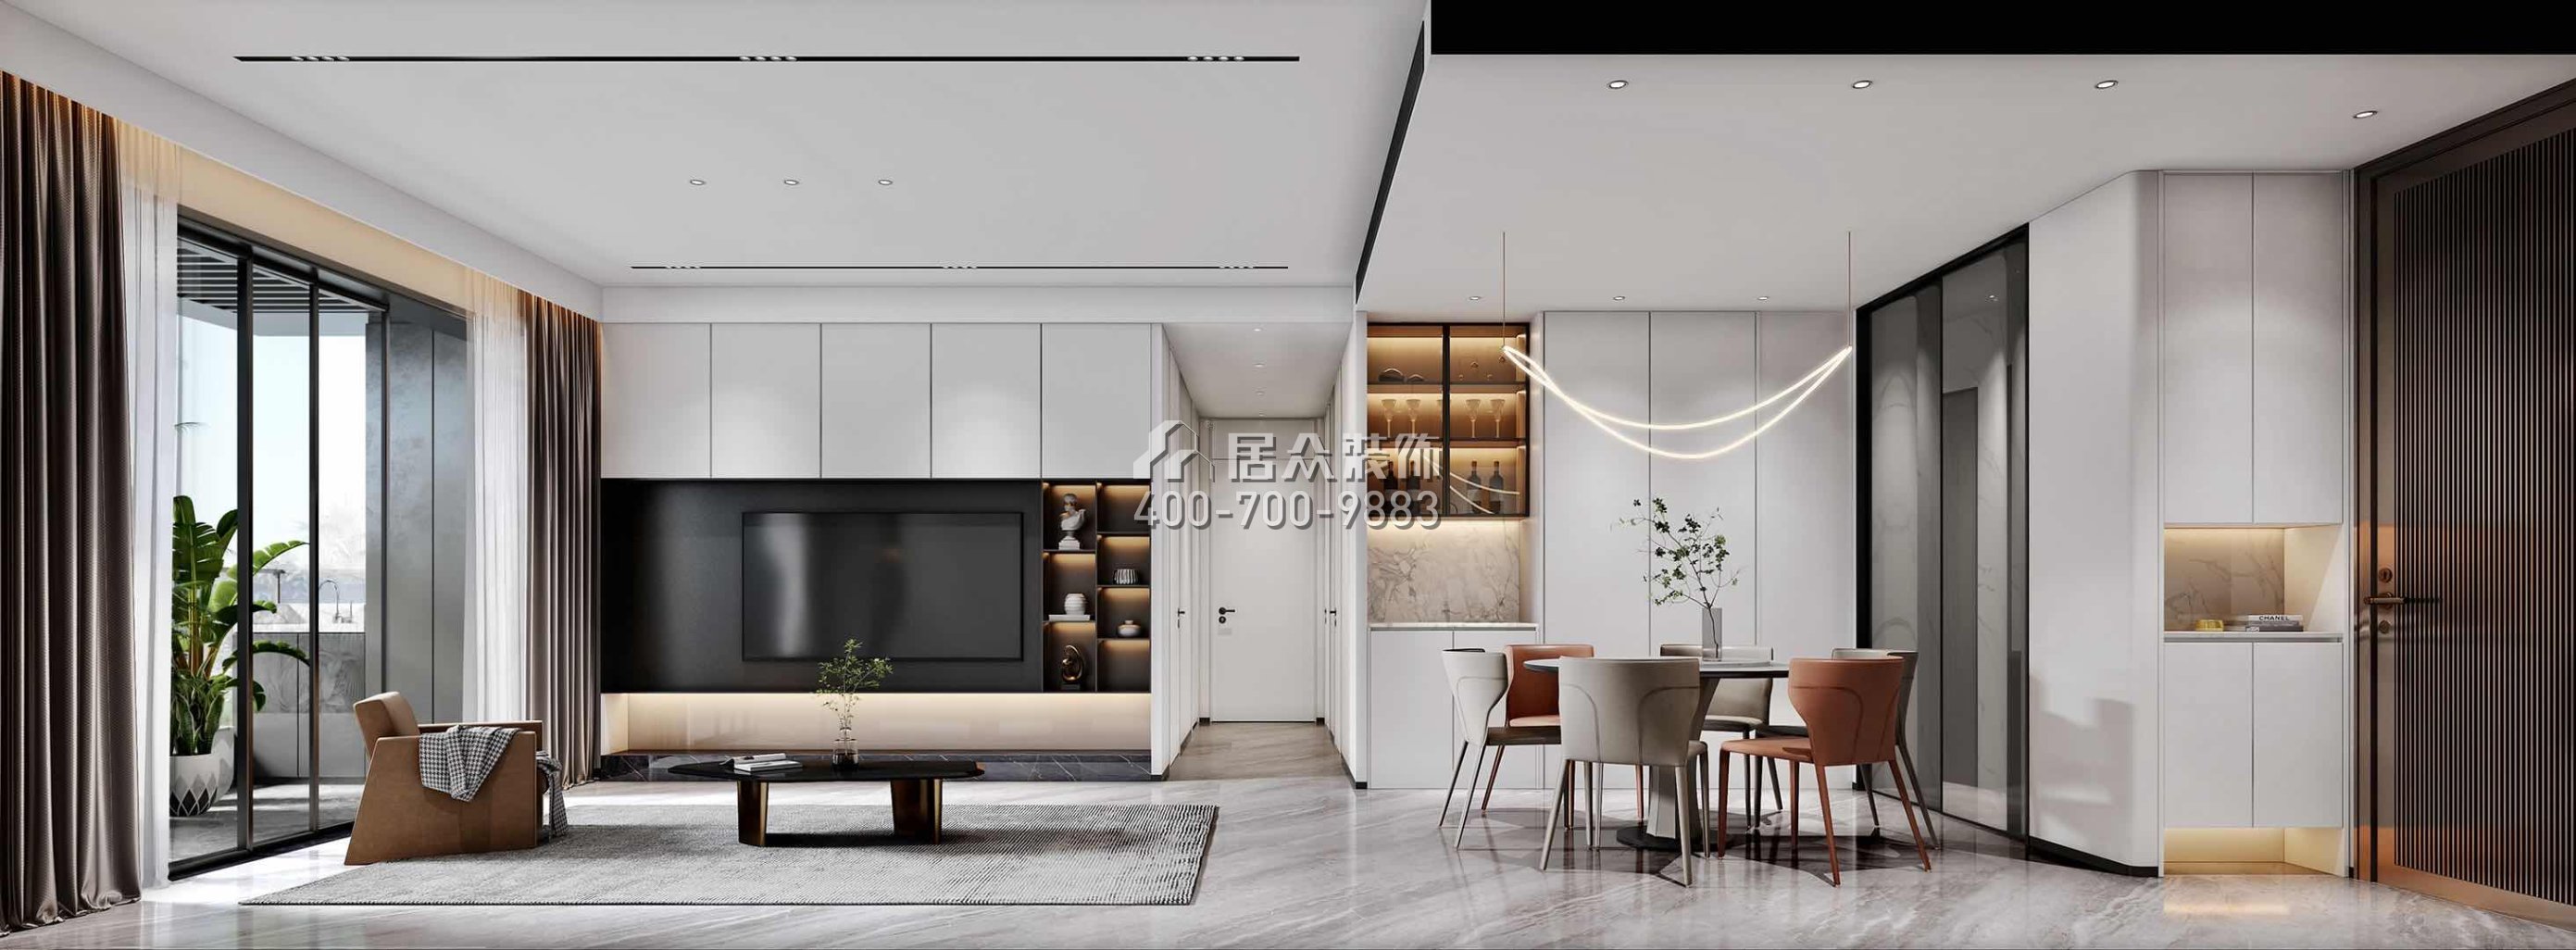 天健天骄123平方米现代简约风格平层户型客餐厅一体装修效果图